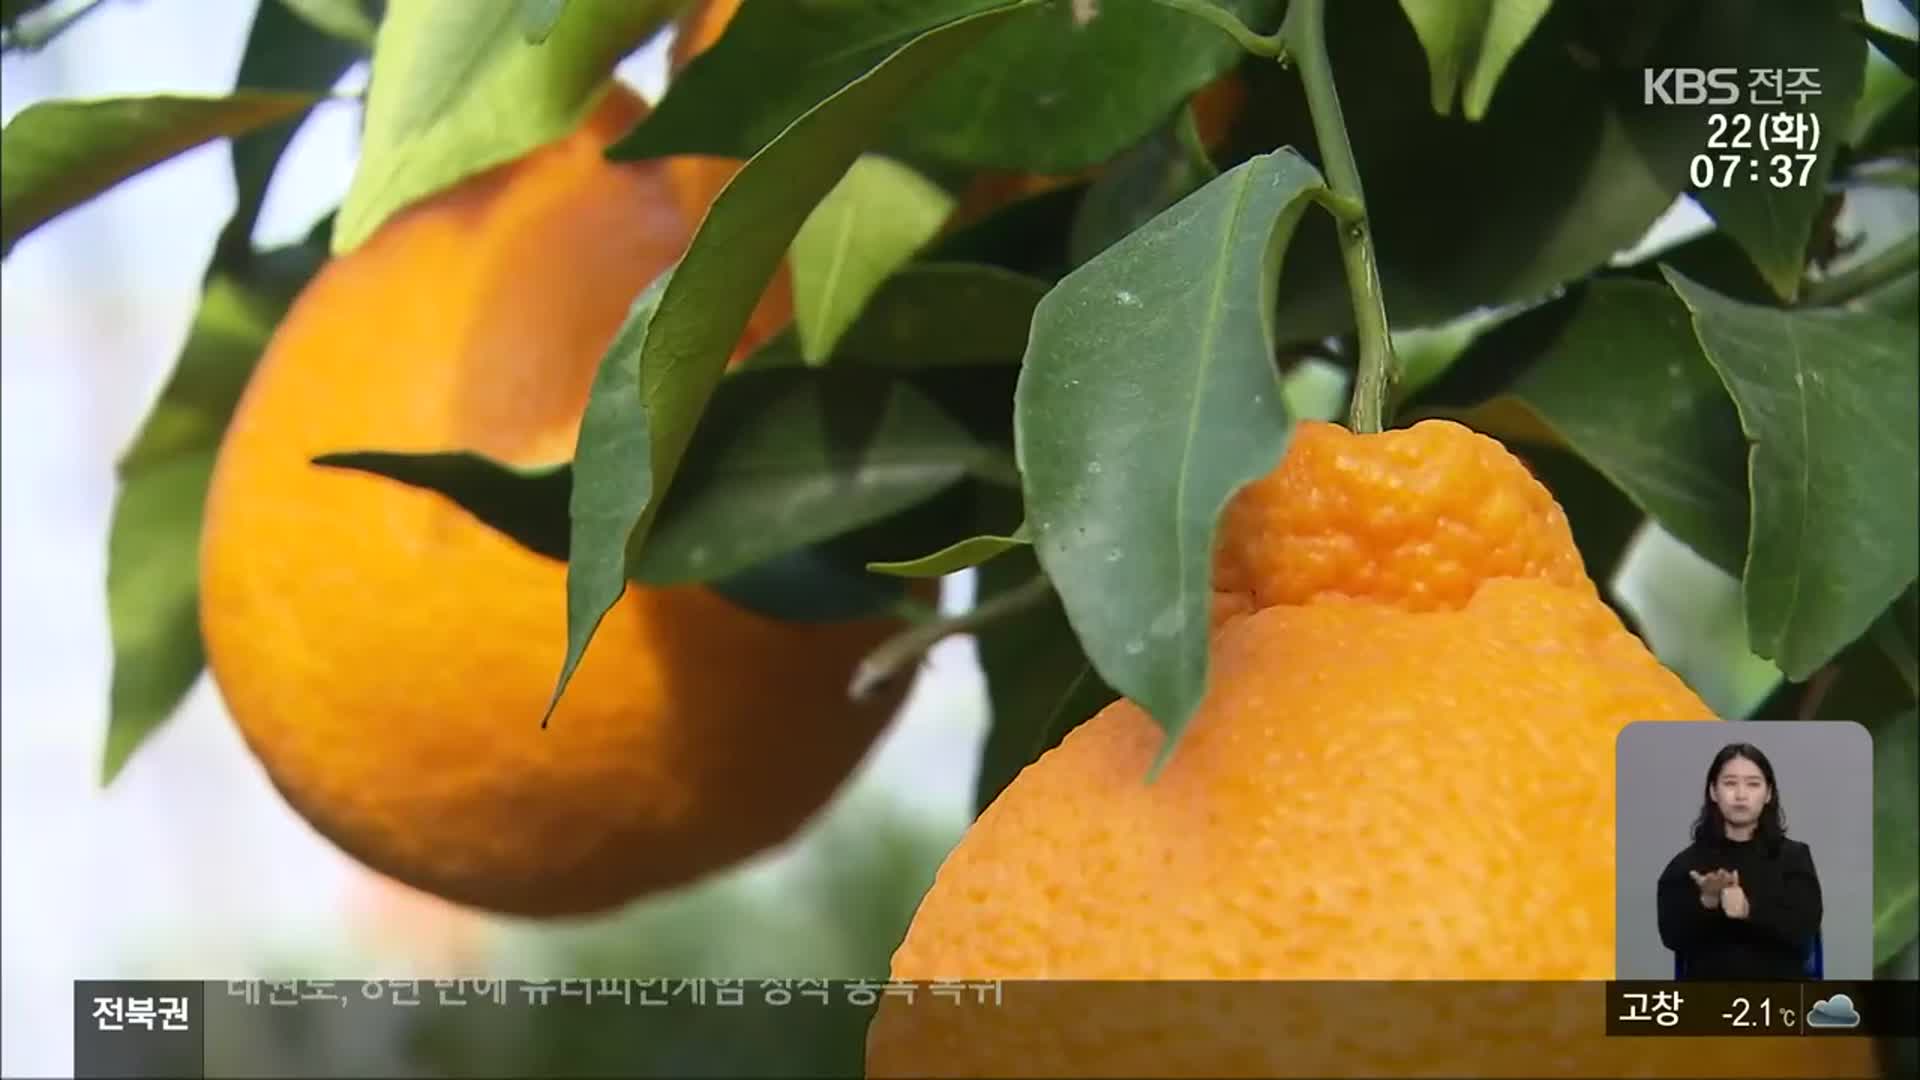 한라봉 등 만감류 재배 늘어…전북, 광역 공동브랜드 출범